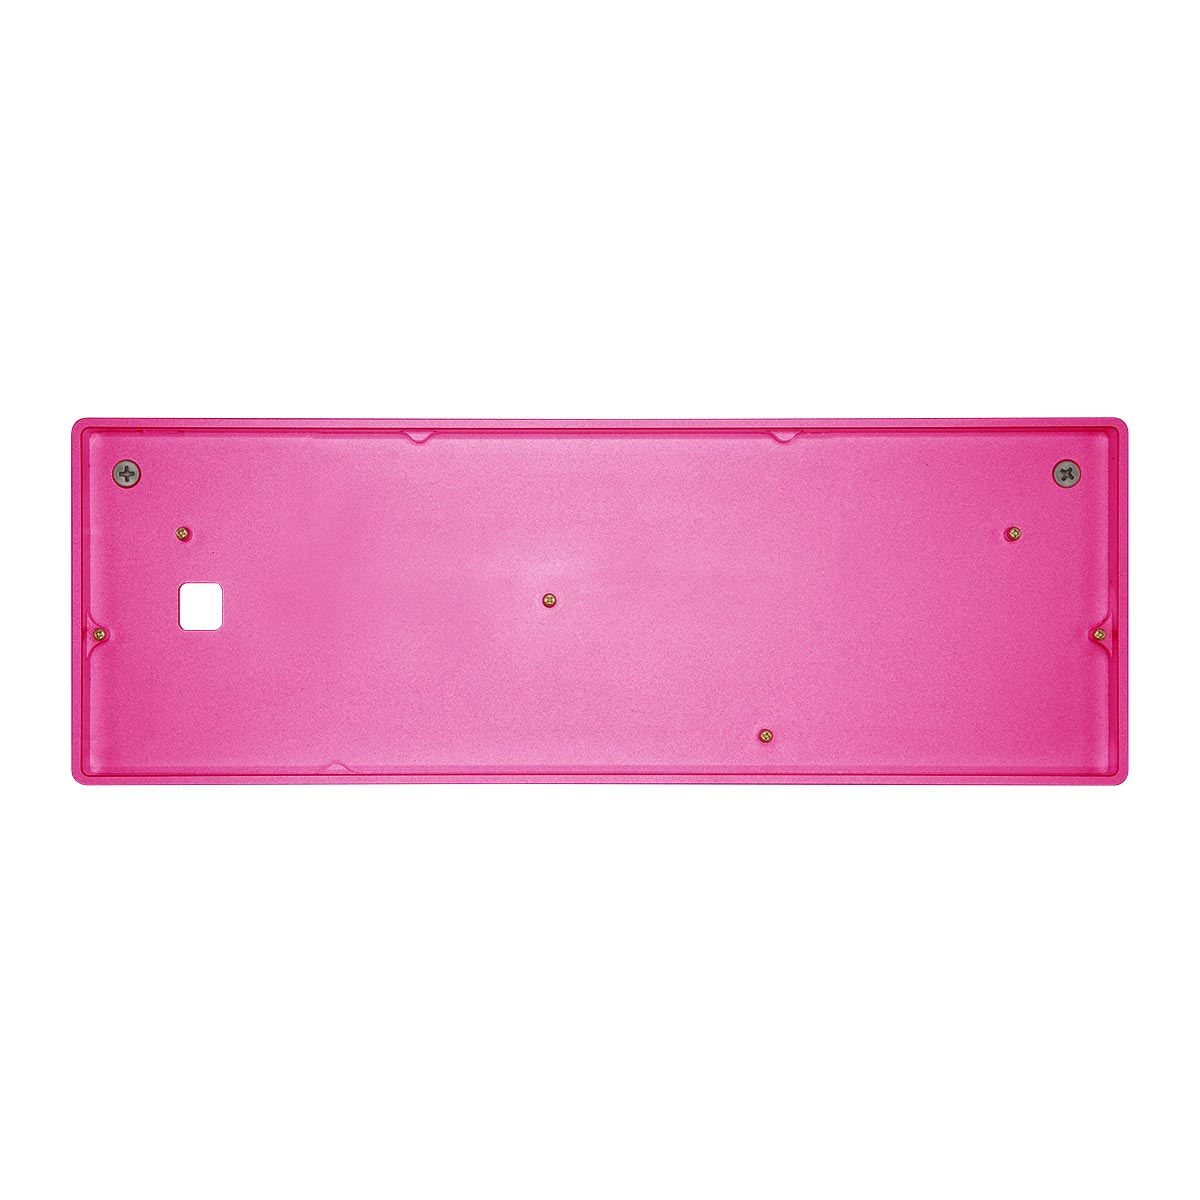 Base Pink - Aluminum » 60% 1upkeyboards